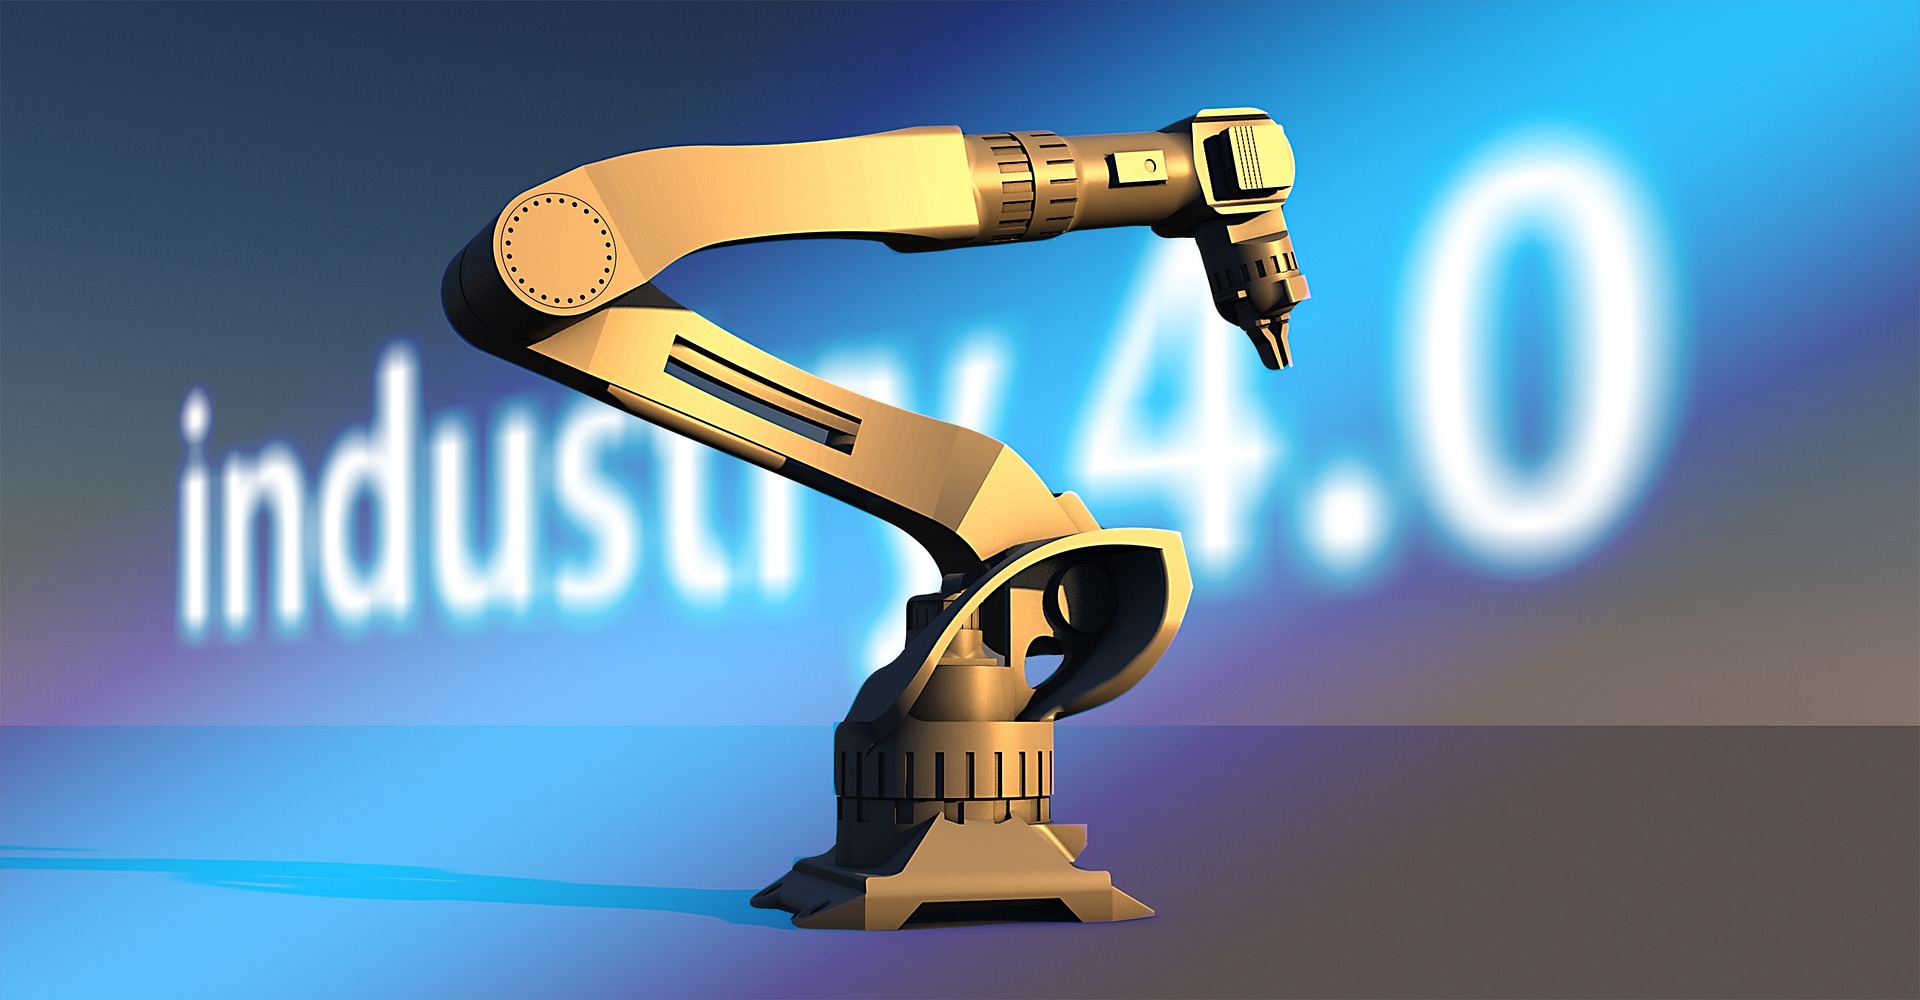 Der Aufstieg der kollaborativen Robotik - eine intelligente Industrie